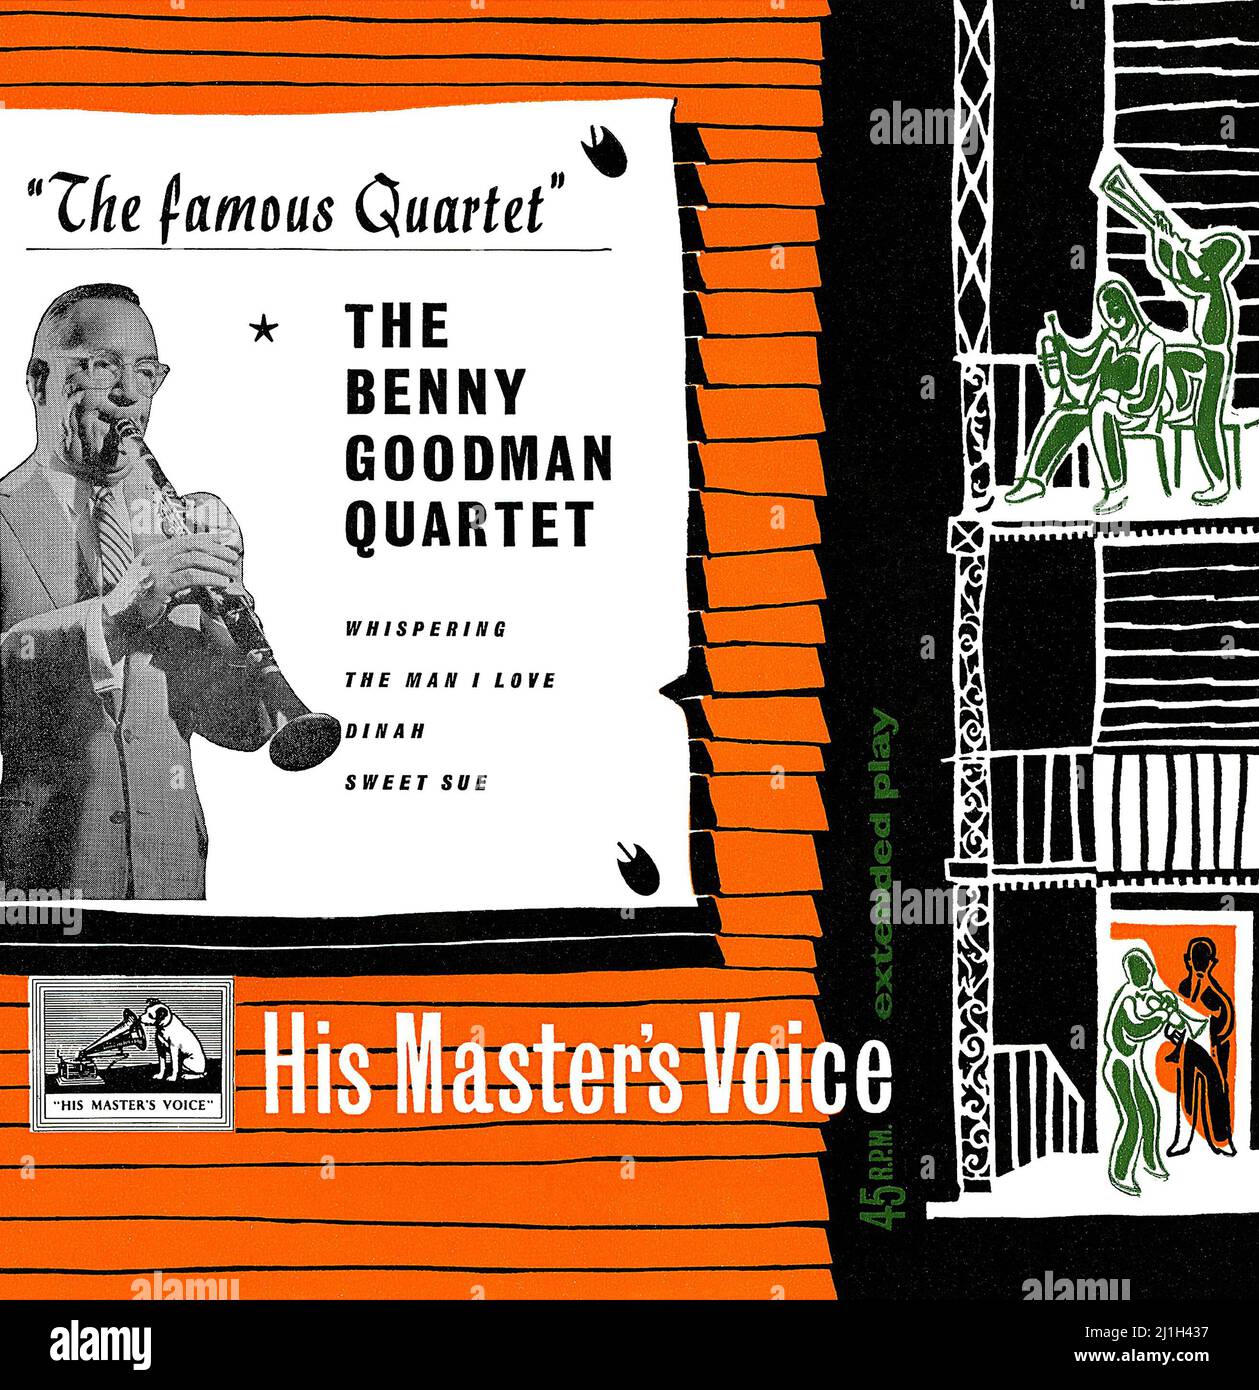 Couverture d'un vinyle britannique 7' E.P. par le Benny Goodman Quartet intitulé The Famous Quartet. Publié en 1956 sur le label voix de son maître. Les enregistrements sont des années 1930. Banque D'Images